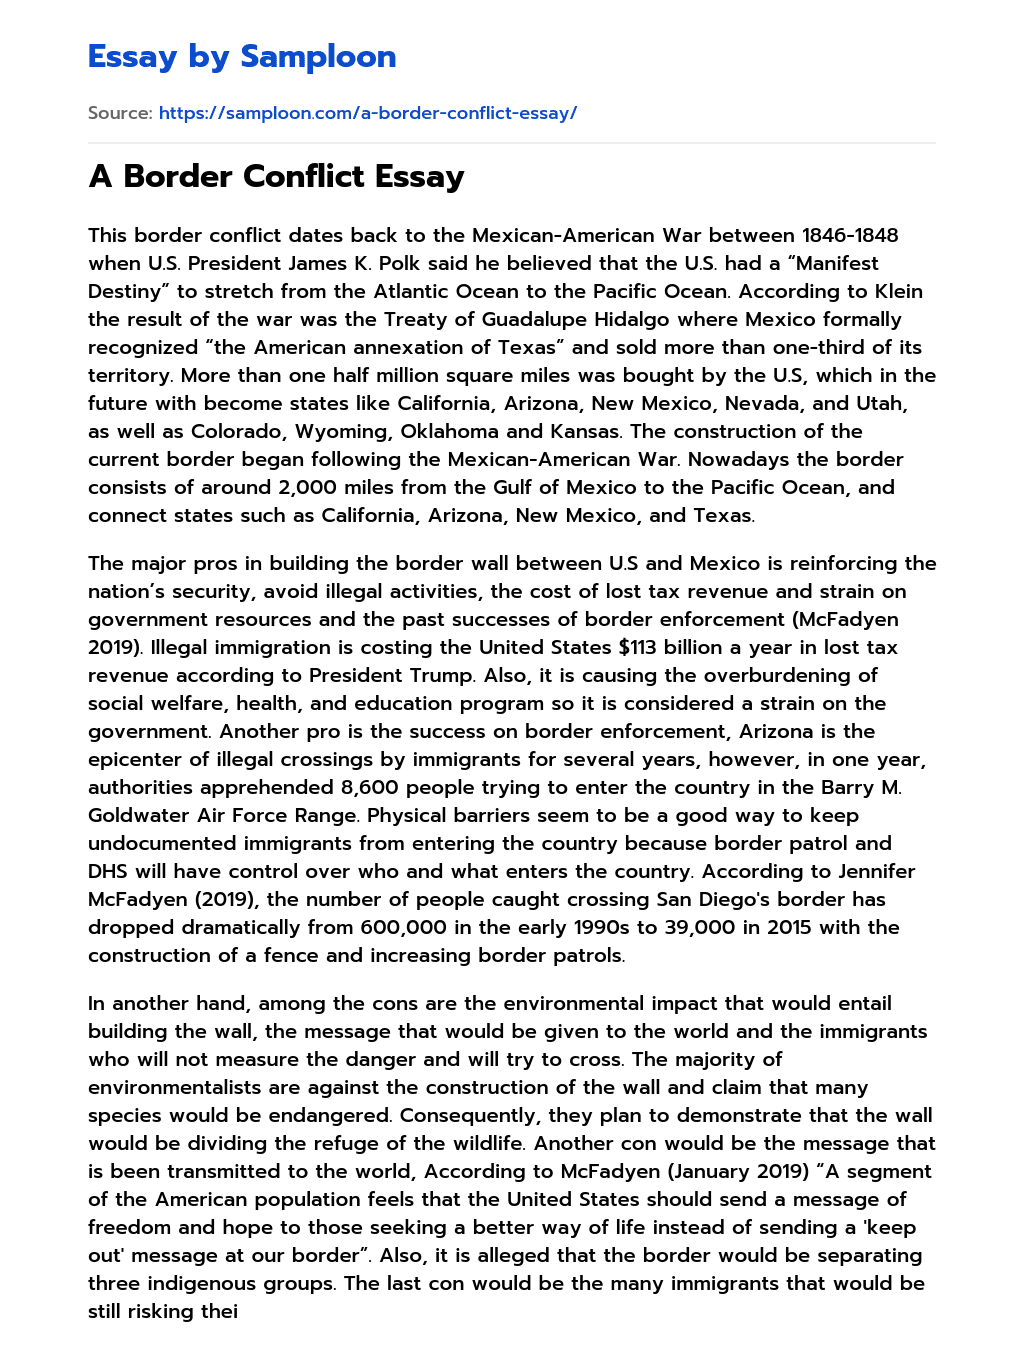 A Border Conflict Essay essay